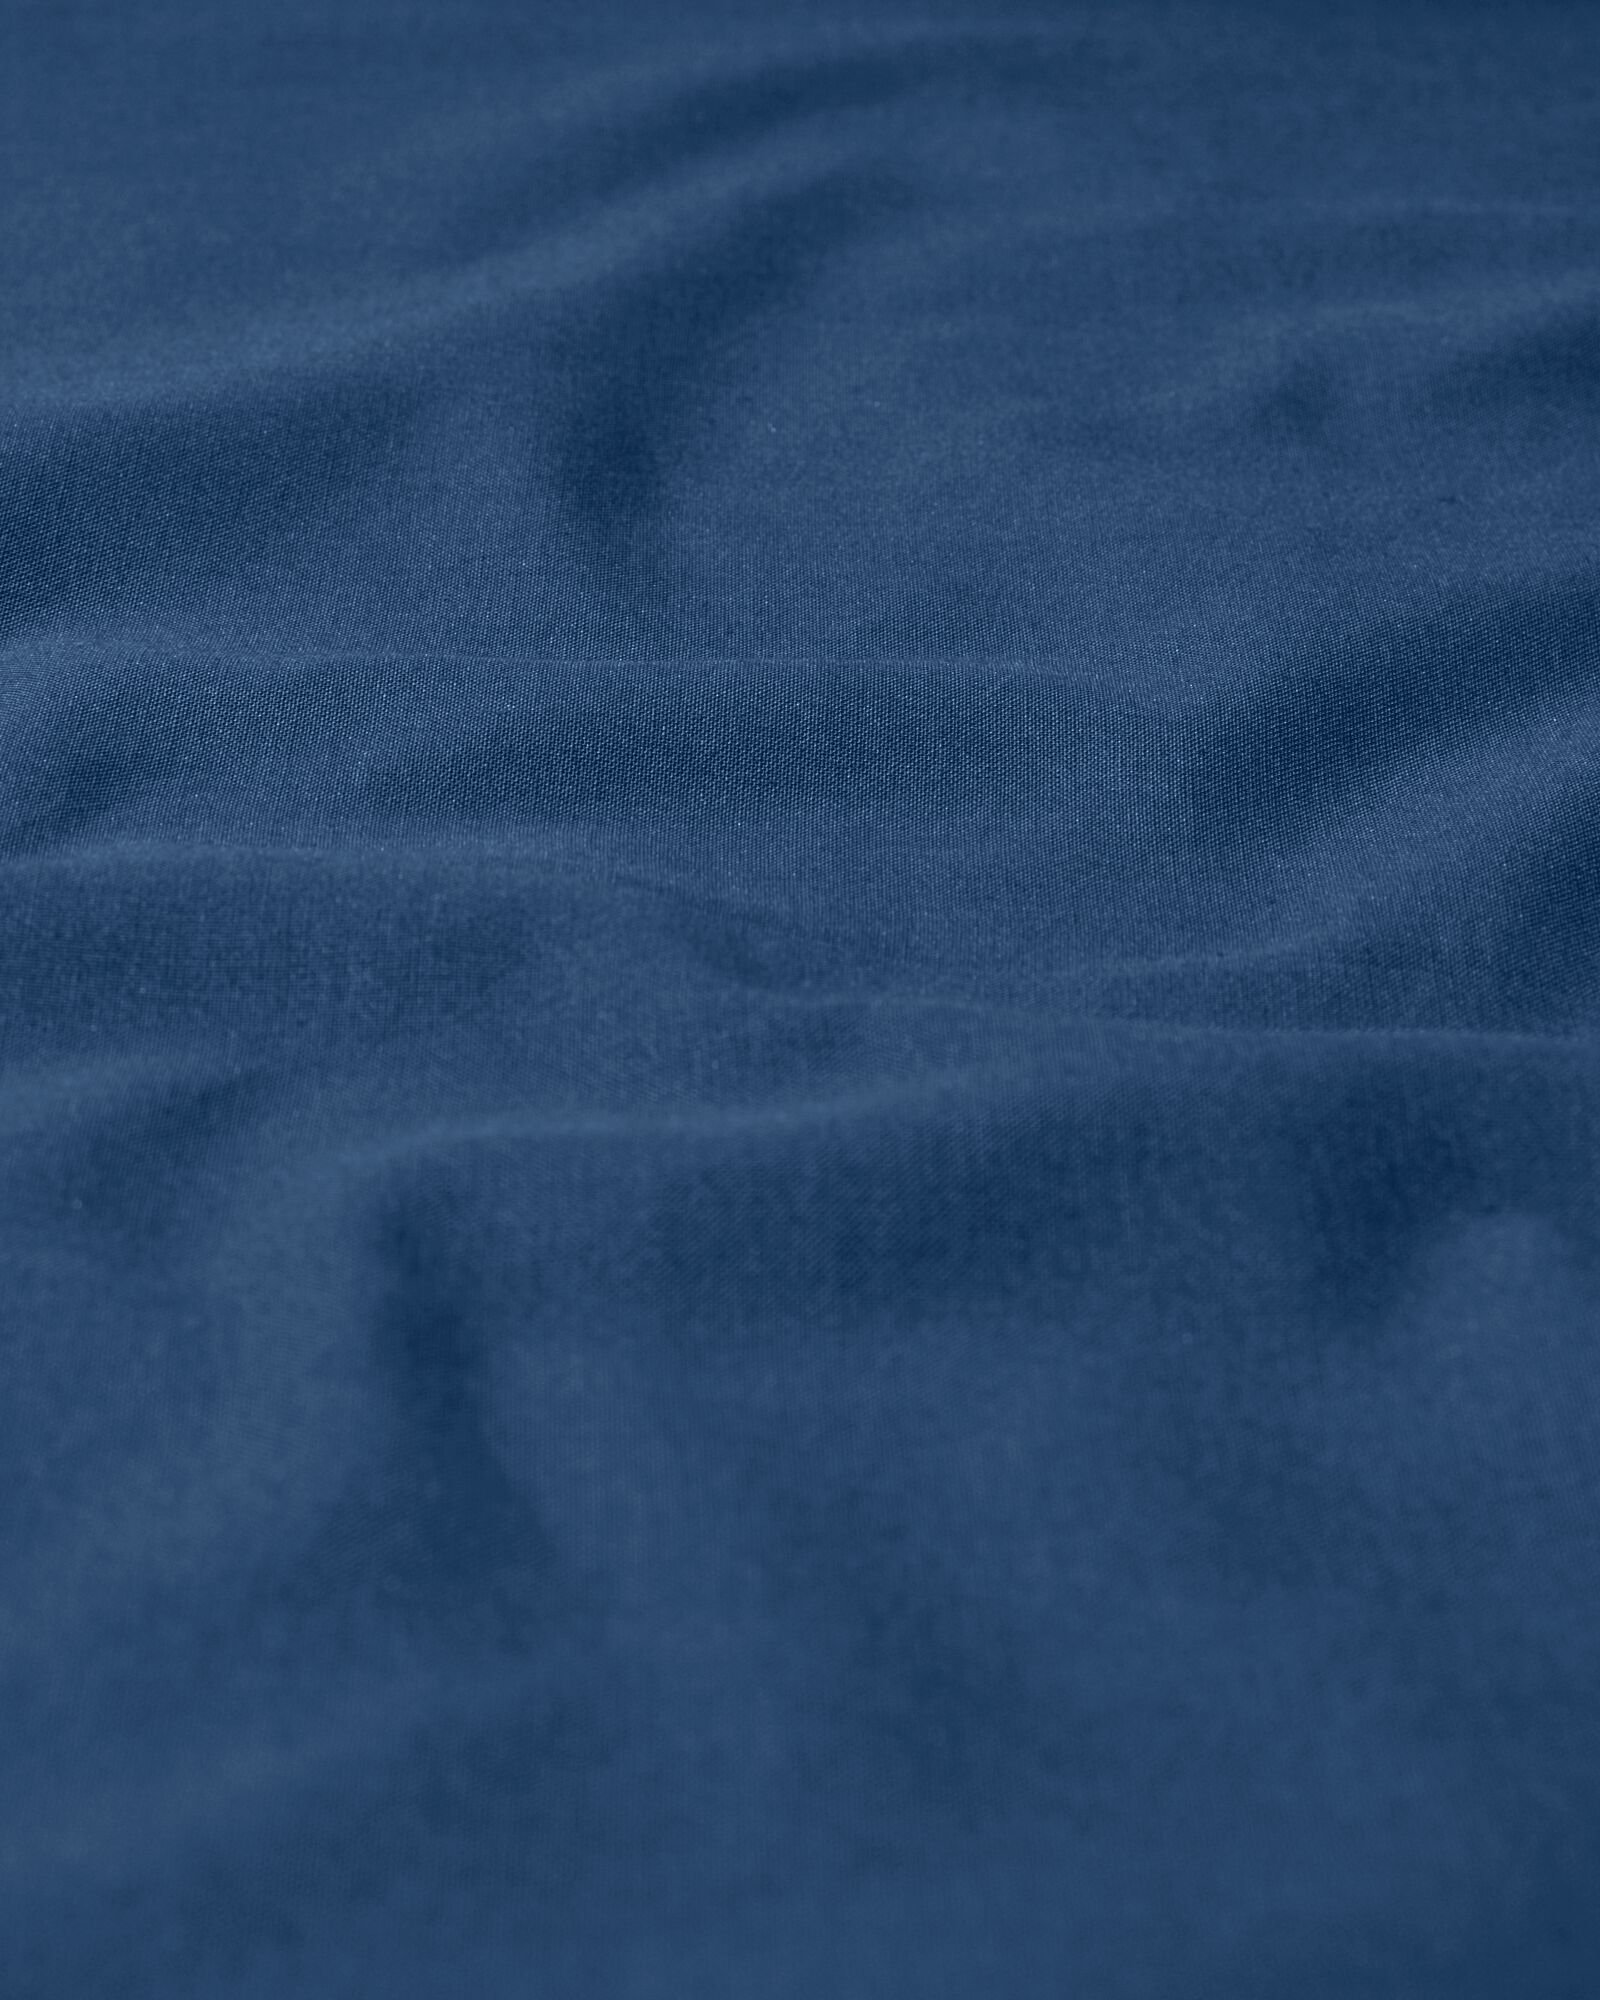 Spannbettlaken, Soft Cotton, 80 x 200 cm, blau - 5190049 - HEMA